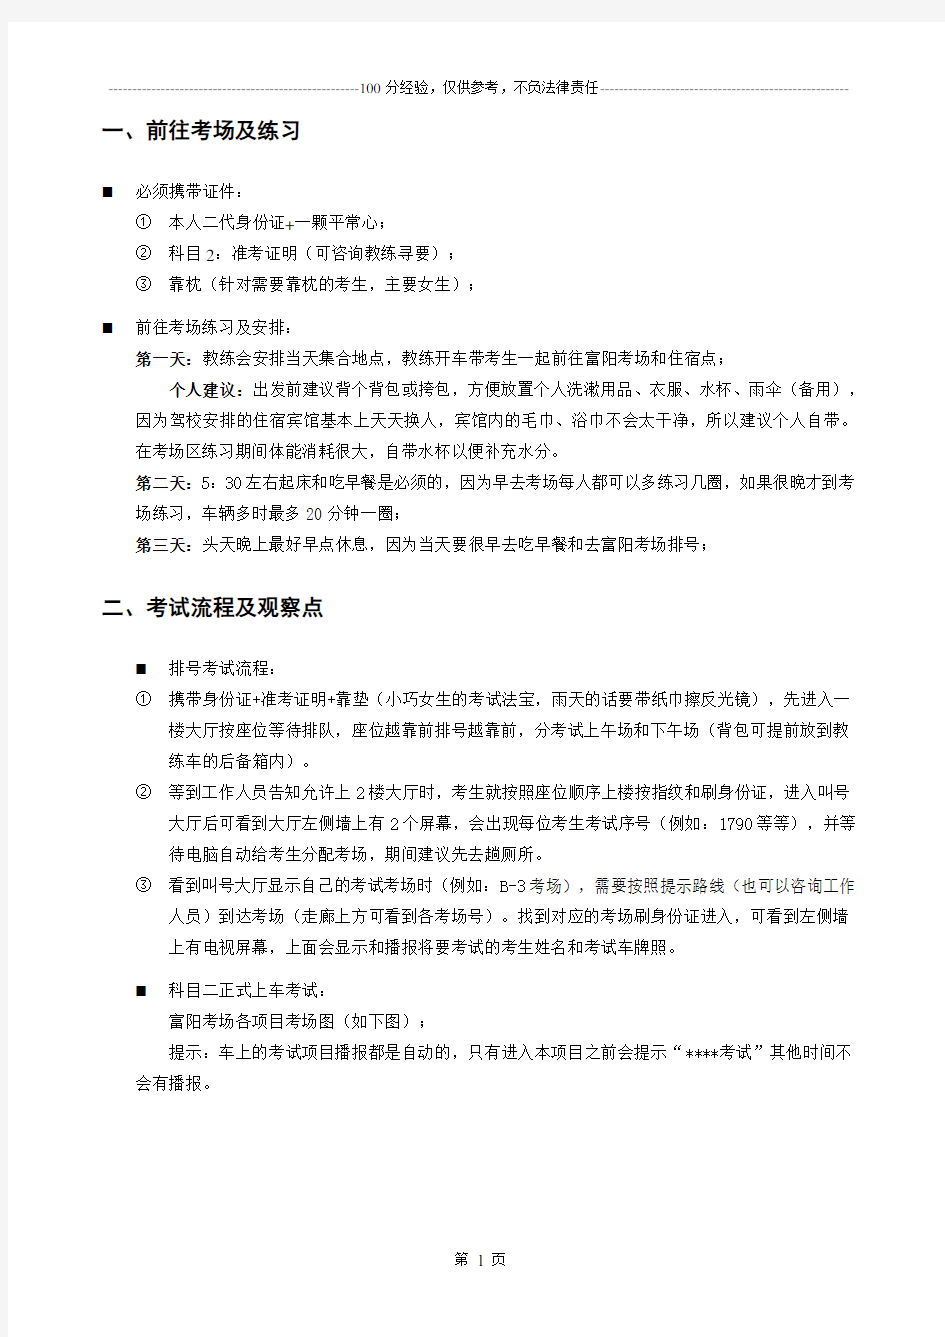 杭州市(富阳区)驾照考试科目二考试流程和攻略